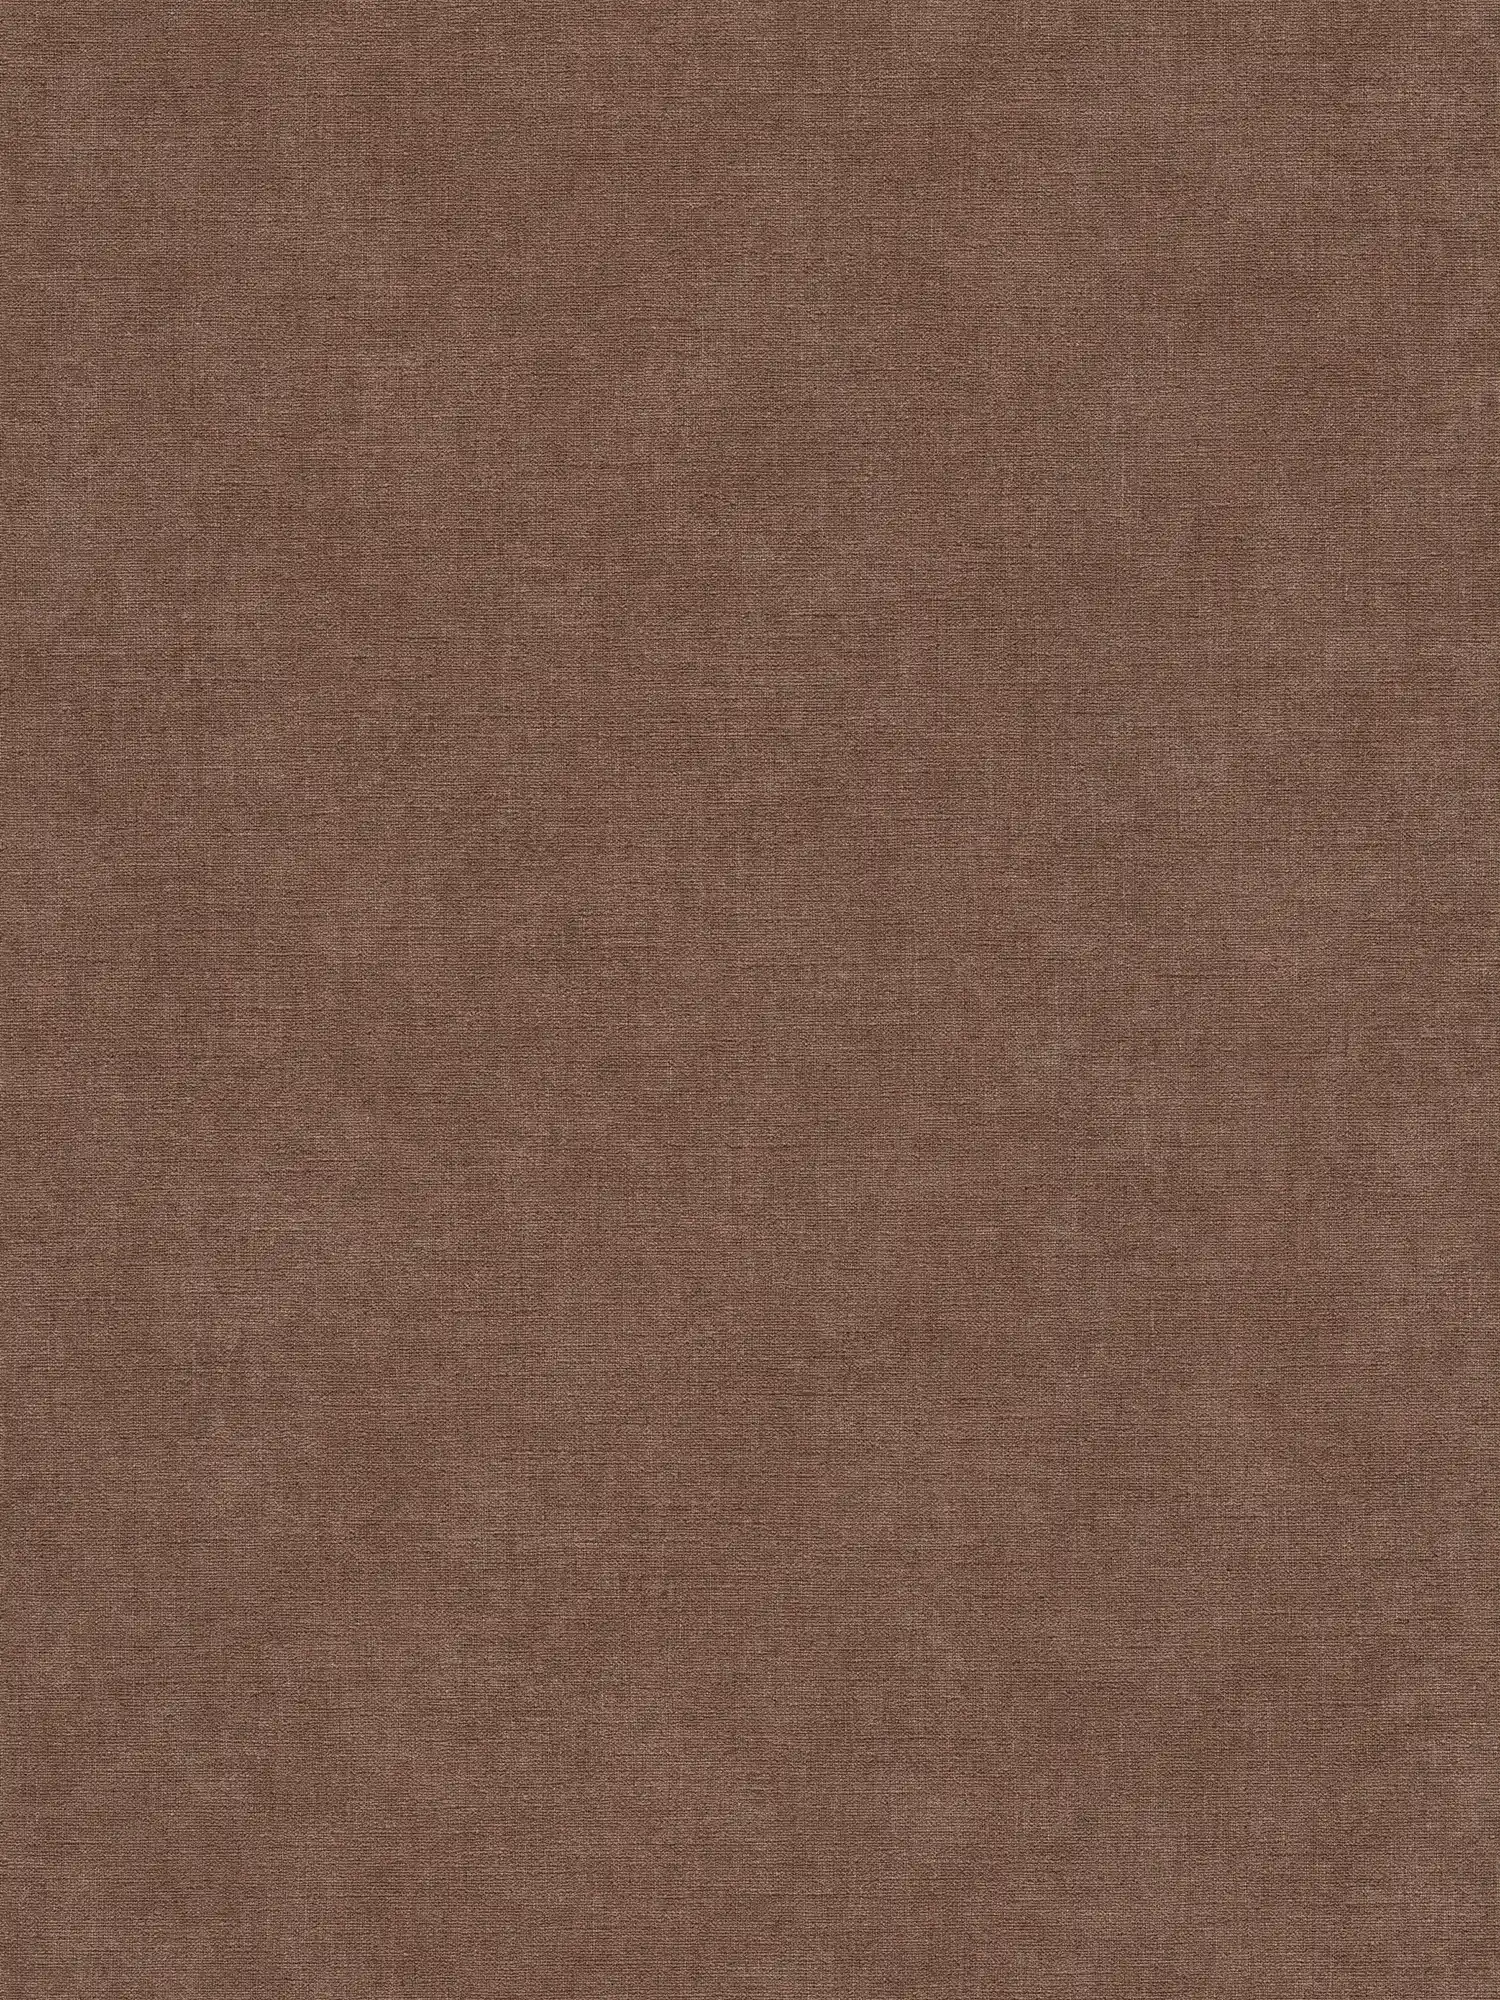 Einfarbige Vliestapete mit leichter Struktur – Braun, Rot
